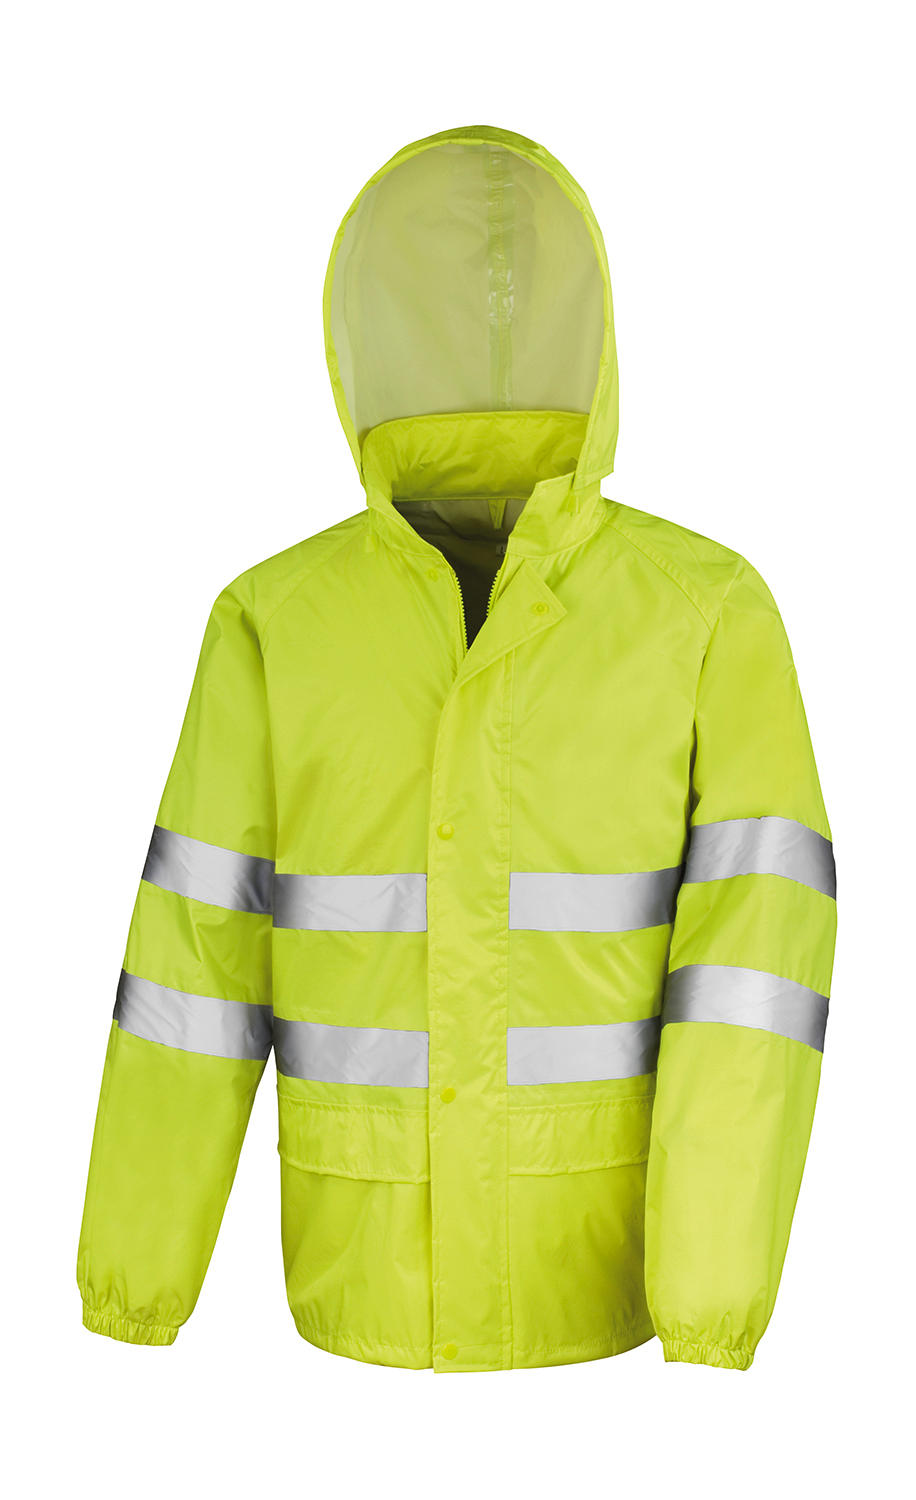  Hi-Vis Waterproof Suit in Farbe Fluorescent Yellow